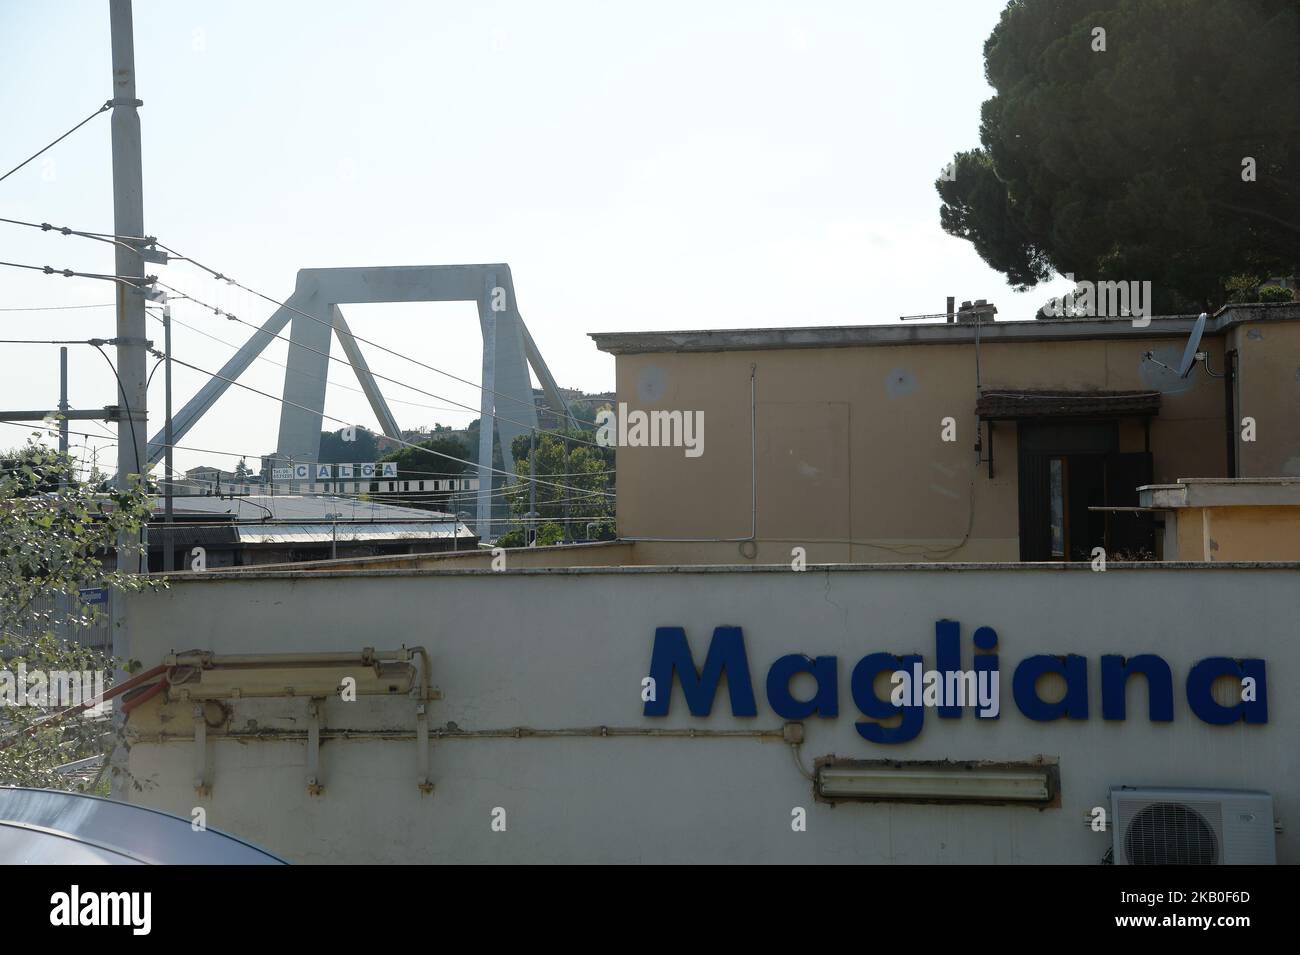 Après l'effondrement du pont de Morandi à Gênes, les alarmes sur les infrastructures en Italie se multiplient. En plus d'avoir construit le pont de Gênes qui s'est effondré, l'ingénieur romain Riccardo Morandi (décédé en 1989 à l'âge de 87 ans) a également conçu un pont dans la capitale. C'est un viaduc suspendu curviligne qui longe le Tibre dans le quartier de Magliana, couvert tous les jours par tous ceux qui viennent ou voyagent à Fiumicino. Bien que considérablement plus petit dans la taille, le pont Morandi à Rome rappelle celui de Gênes en ce qui concerne à la fois les matériaux et les solutions structurelles adoptées, Rome, I Banque D'Images